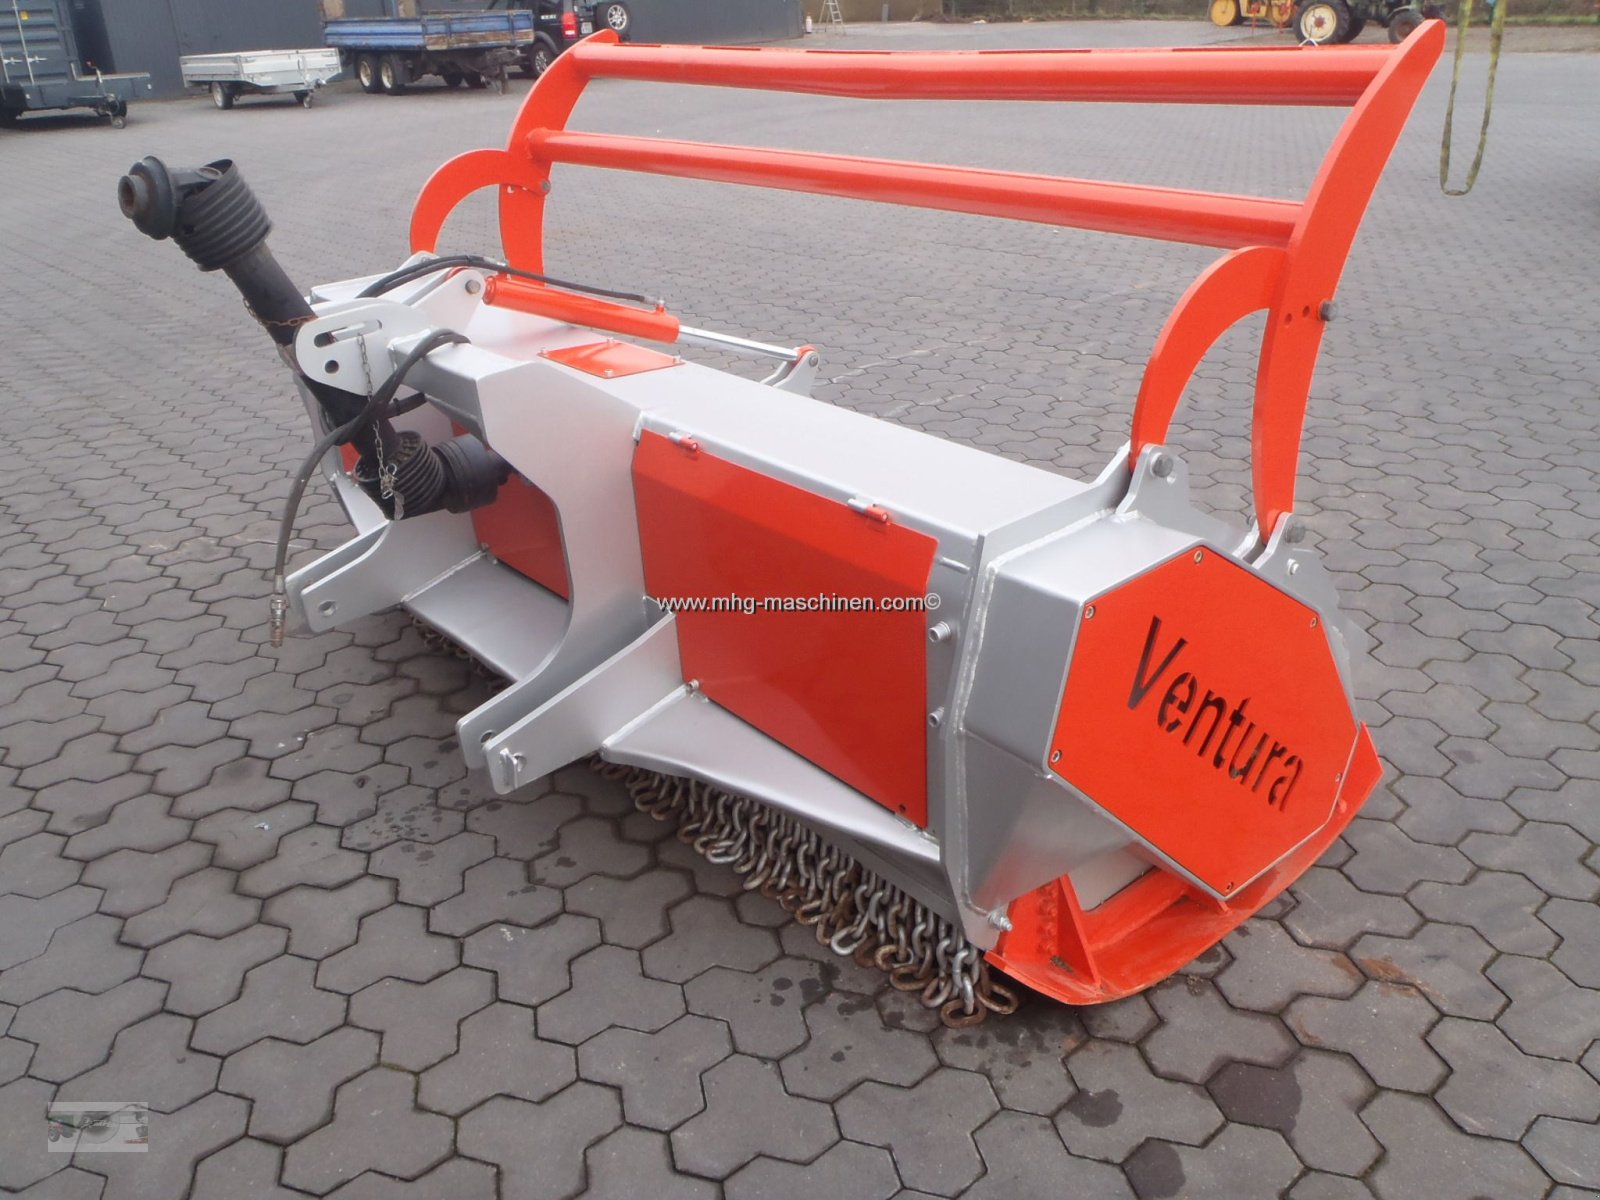 Forstfräse & Forstmulcher des Typs Ventura 250, Gebrauchtmaschine in Gescher (Bild 7)